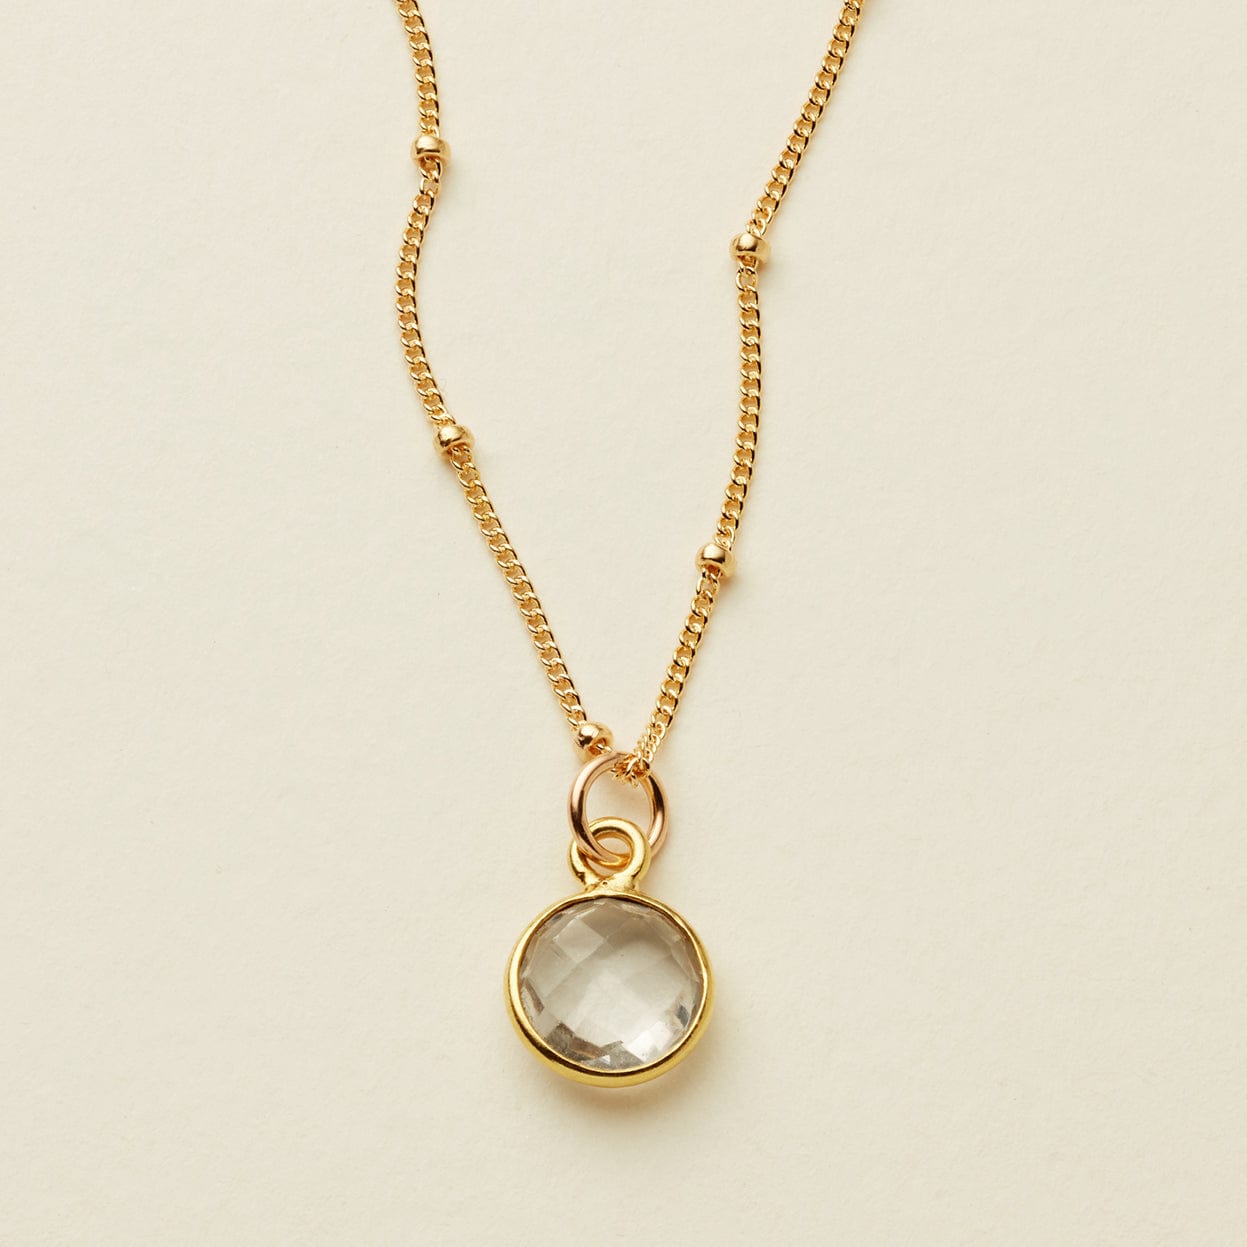 Prism Gemstone Necklace Gold Filled / 16" Necklace